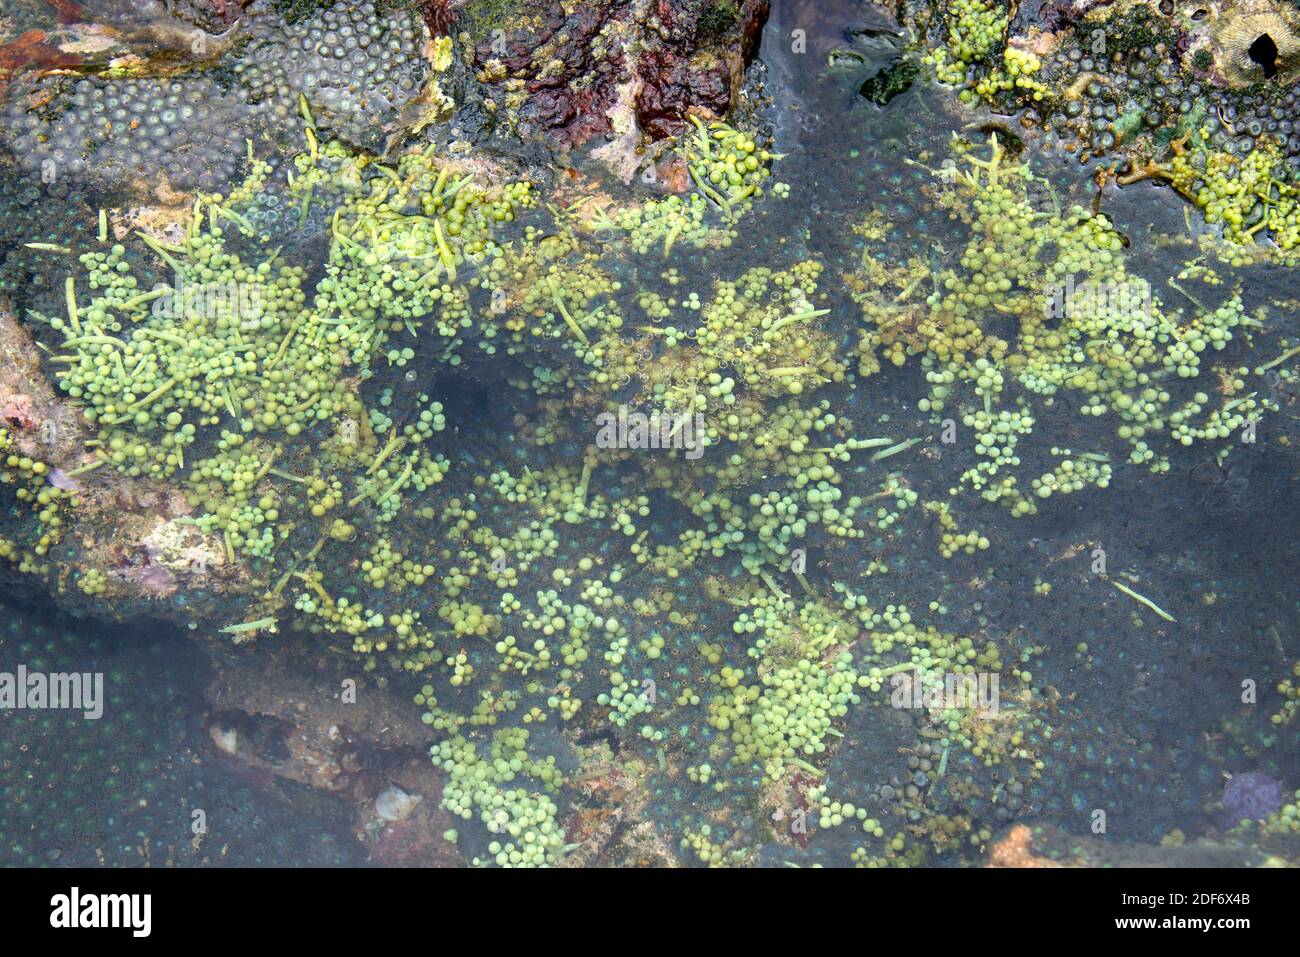 Le raisin de mer (Caulerpa racemosa) est une algue verte marine. Cette photo a été prise à Salvador de Bahia, Brésil. Banque D'Images